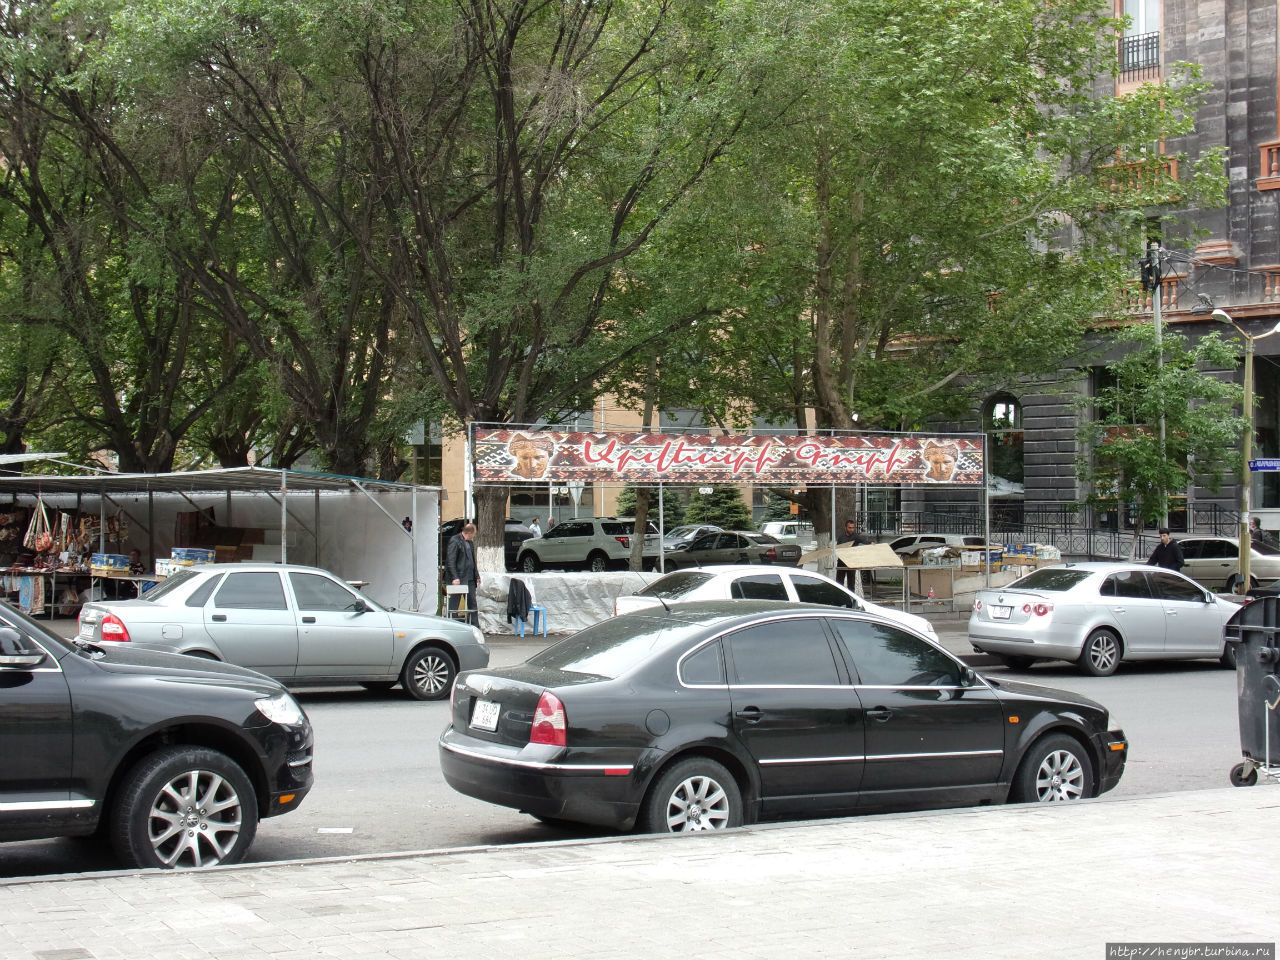 Ереванский Вернисаж — аналог тбилисского Блошиного рынка Ереван, Армения